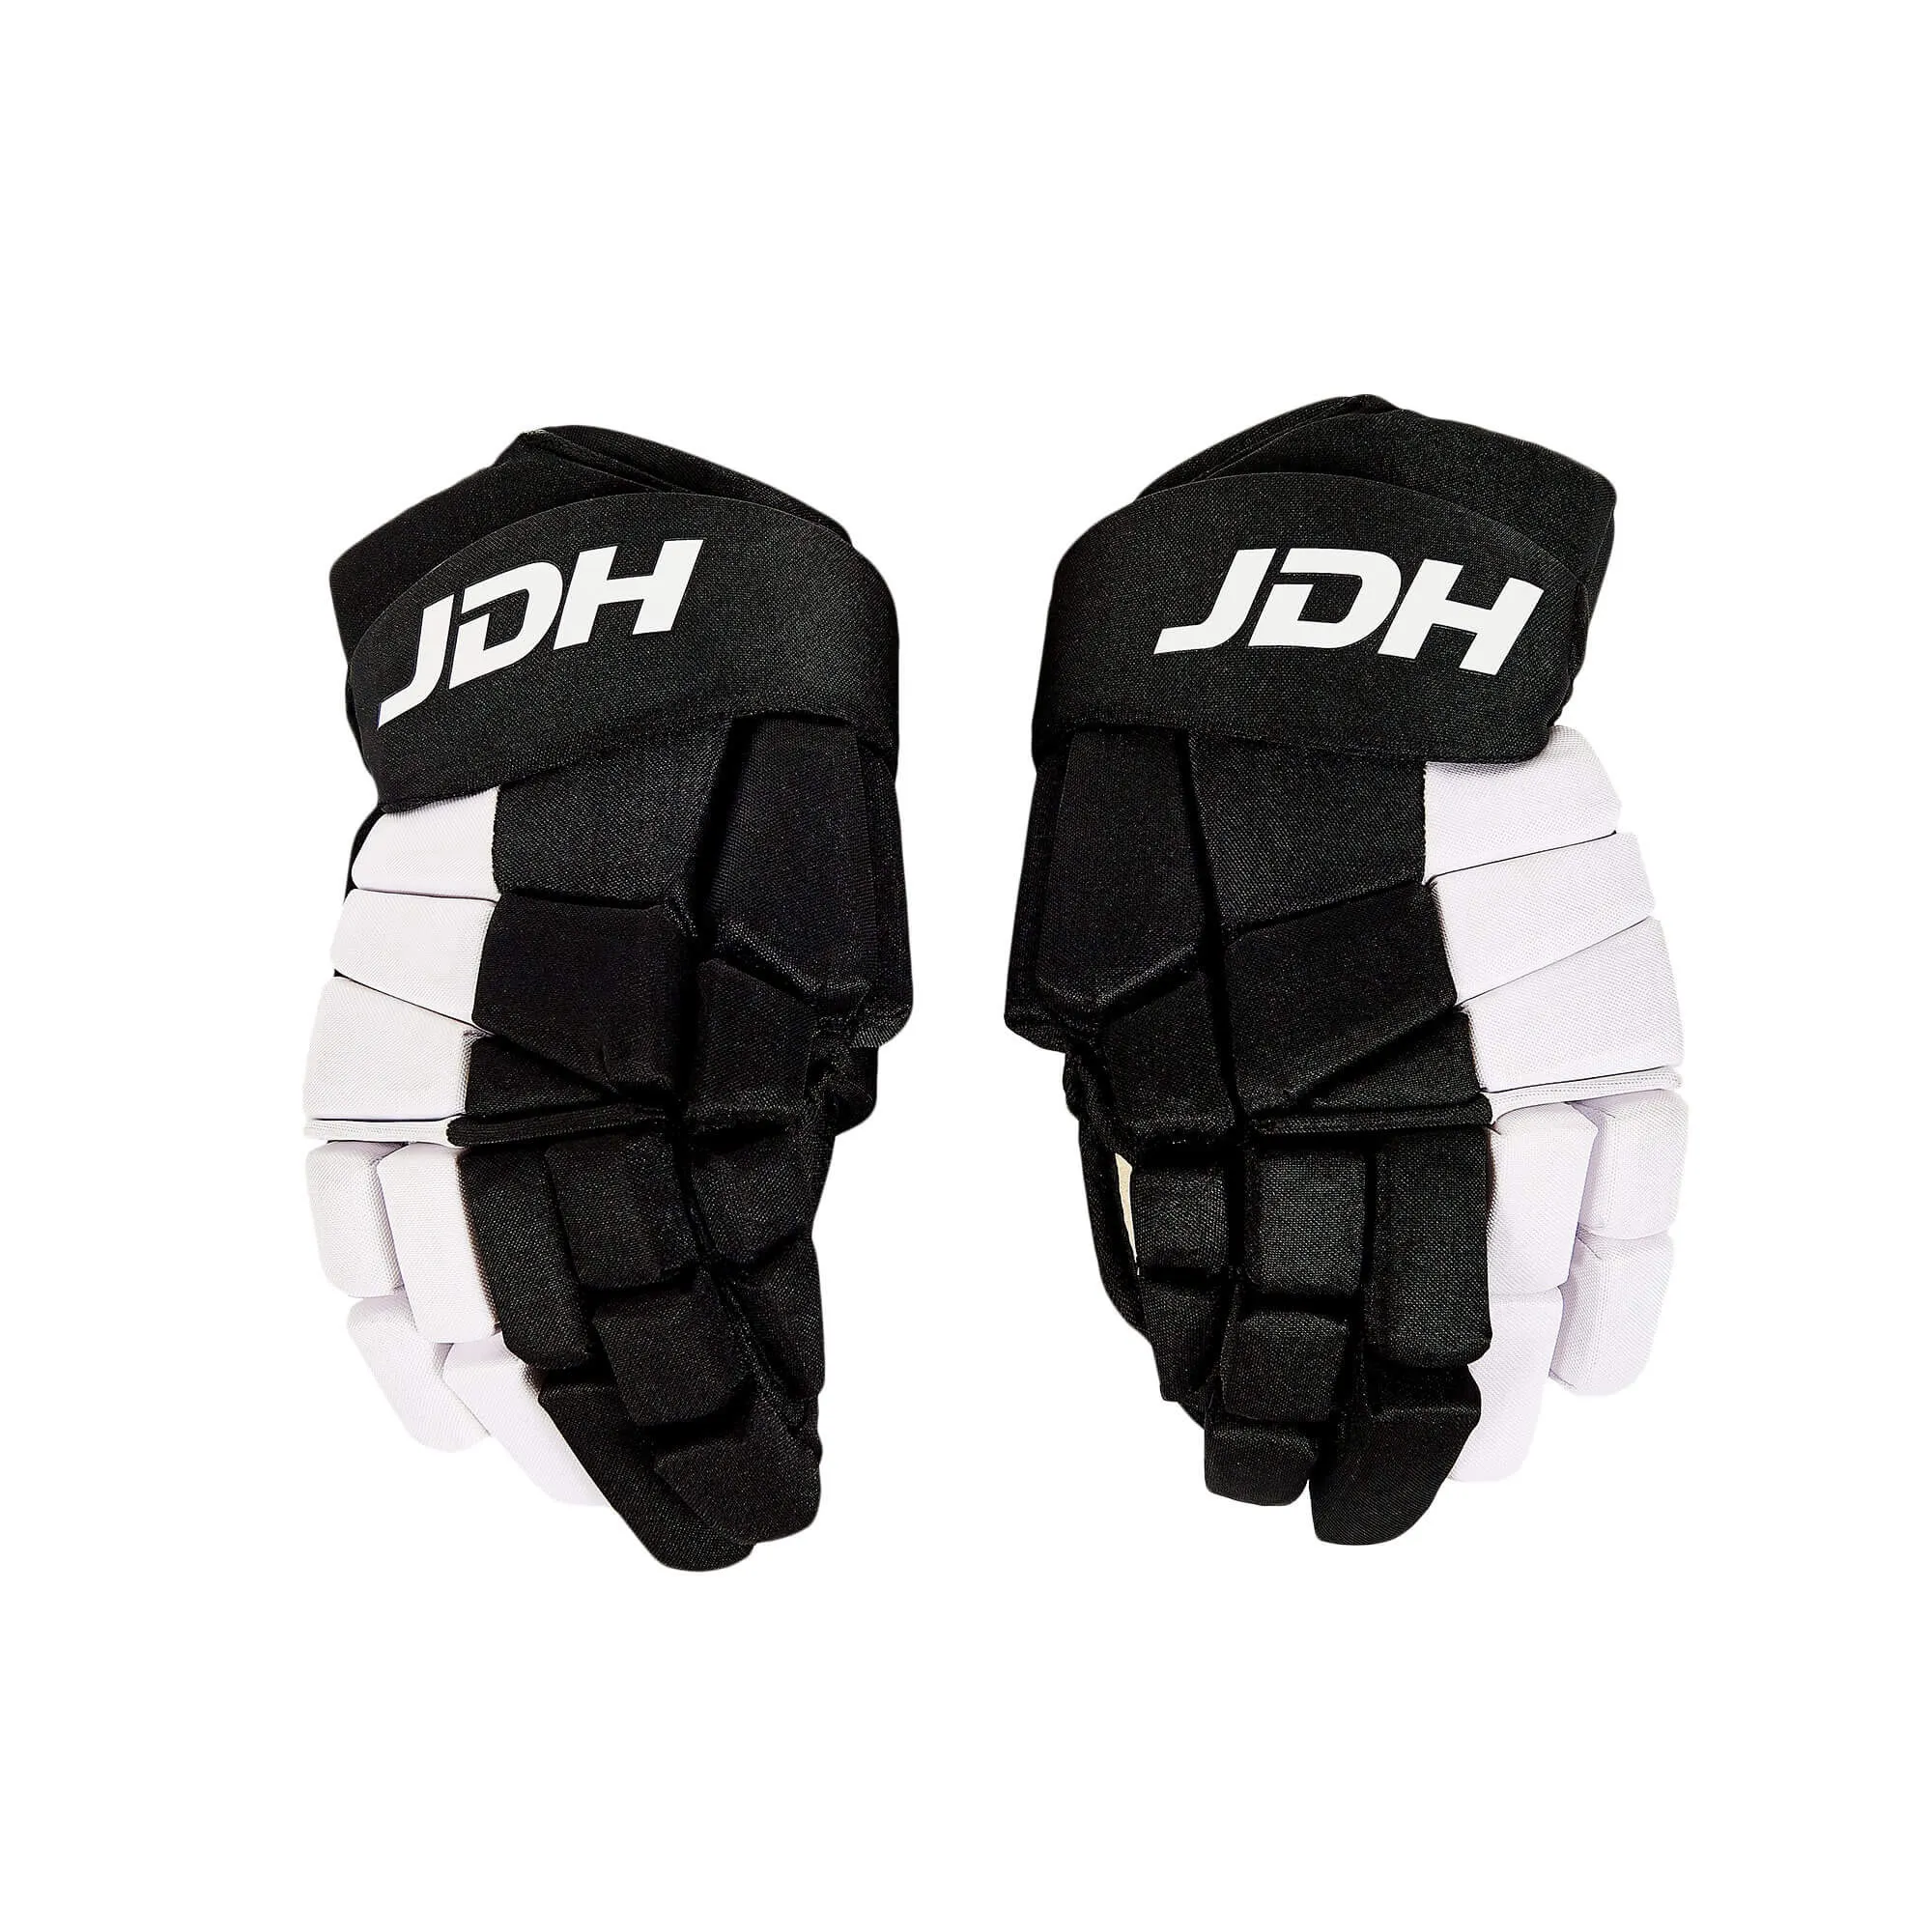 JDH Fat Glove Pair